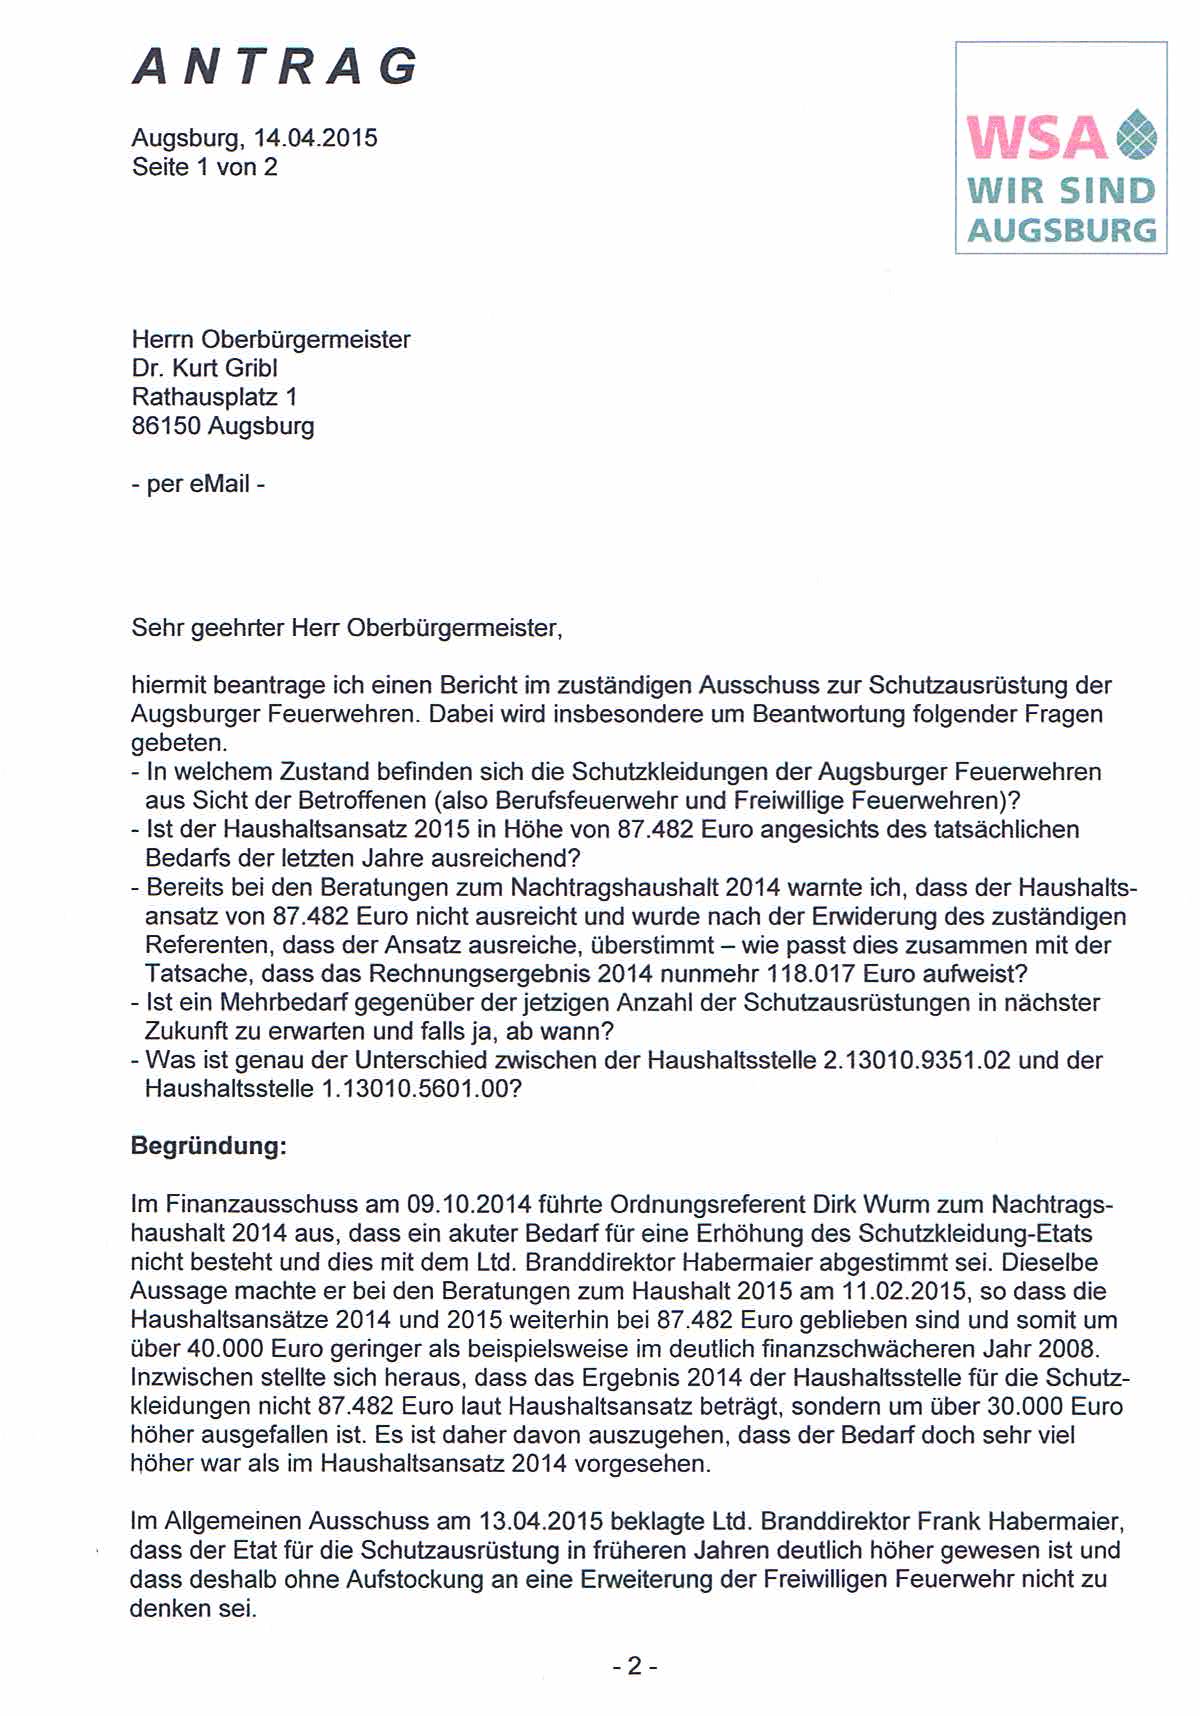 WSA-Antrag vom 14.04.2015 zur Schutzausrüstung der Augsburger Feuerwehren, Seite 1